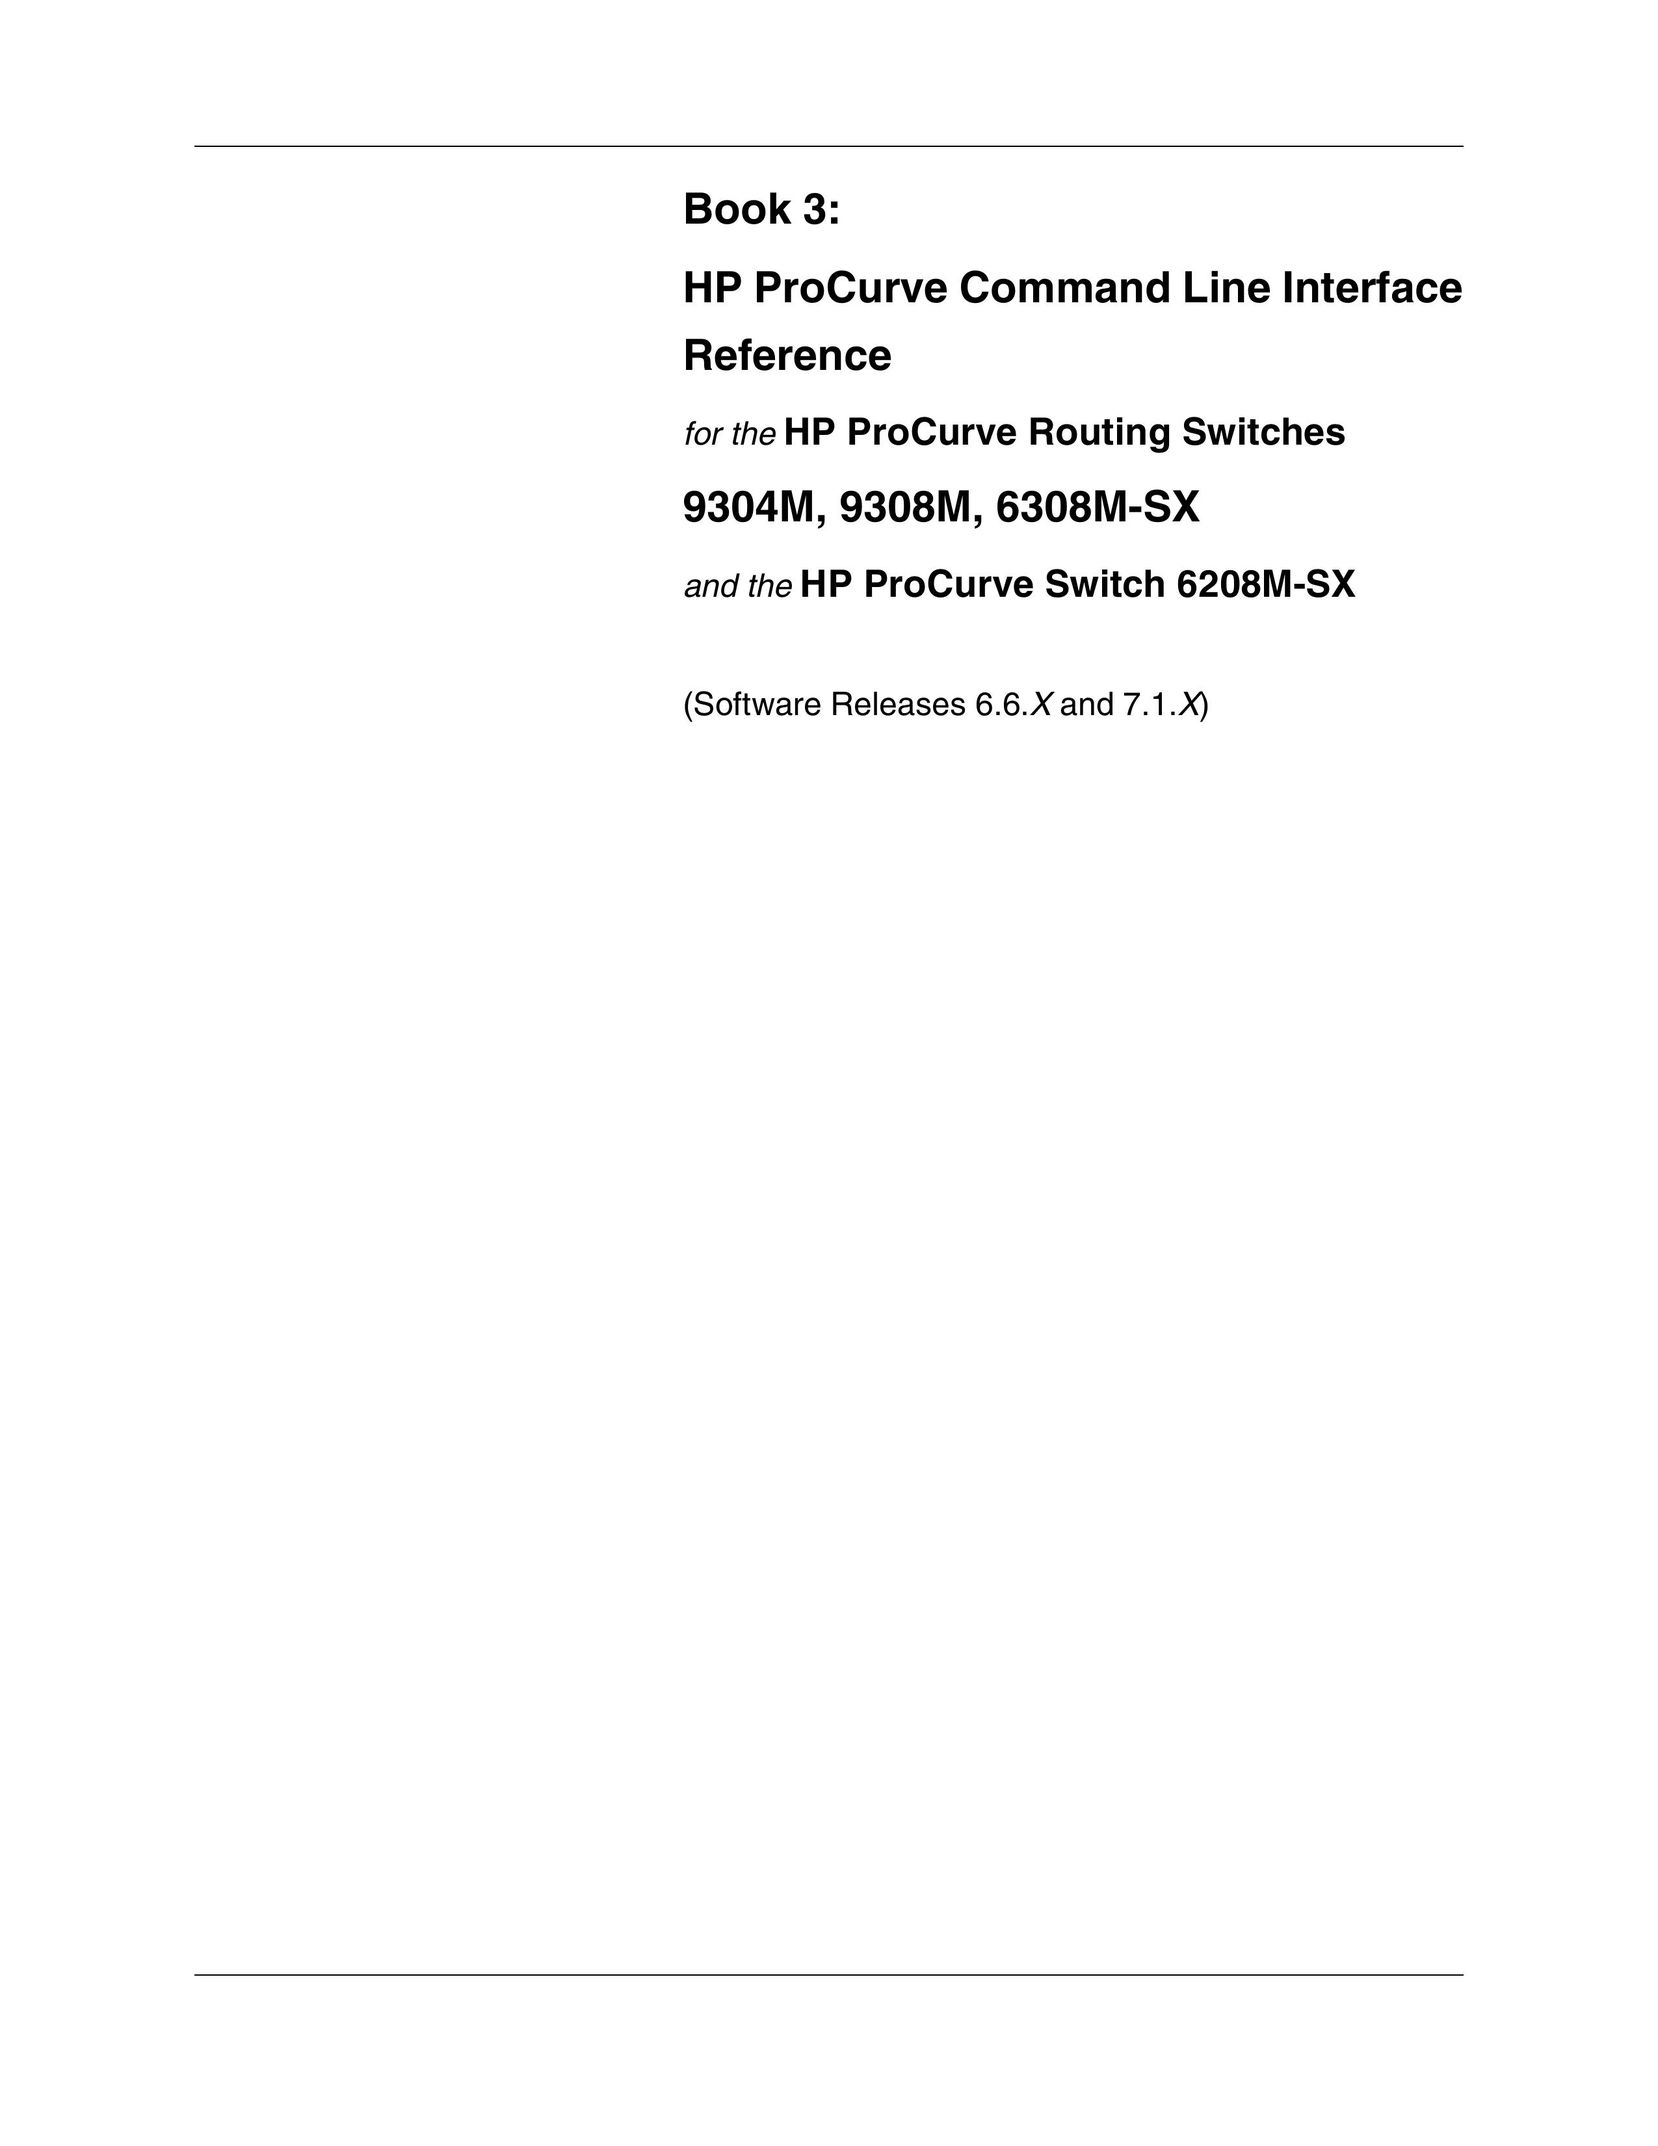 HP (Hewlett-Packard) 9308M Network Router User Manual